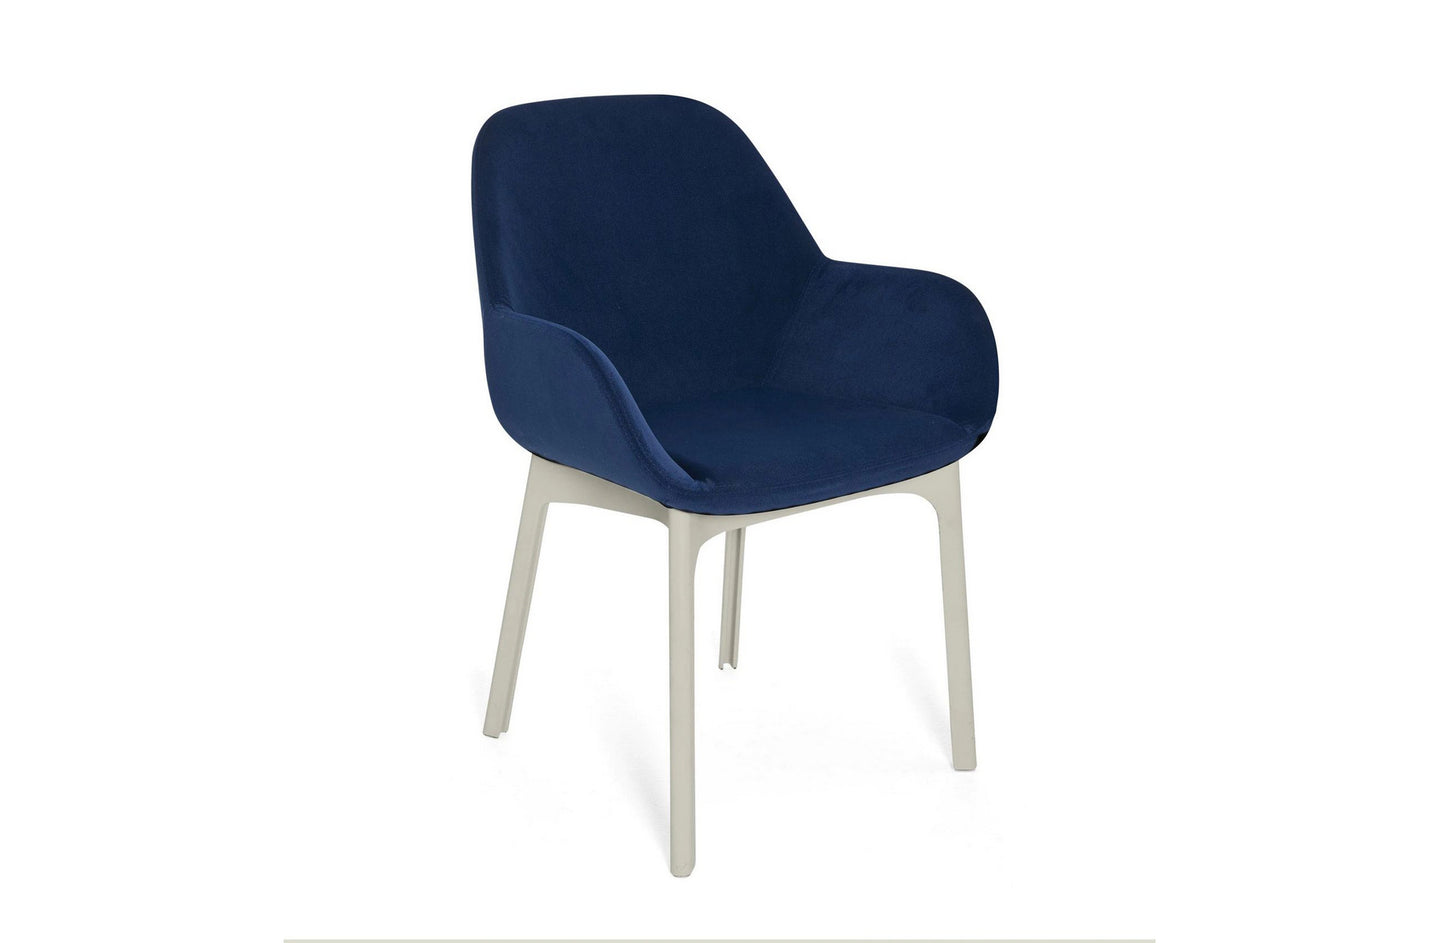 Clap Chair - Aquaclean Fabric
